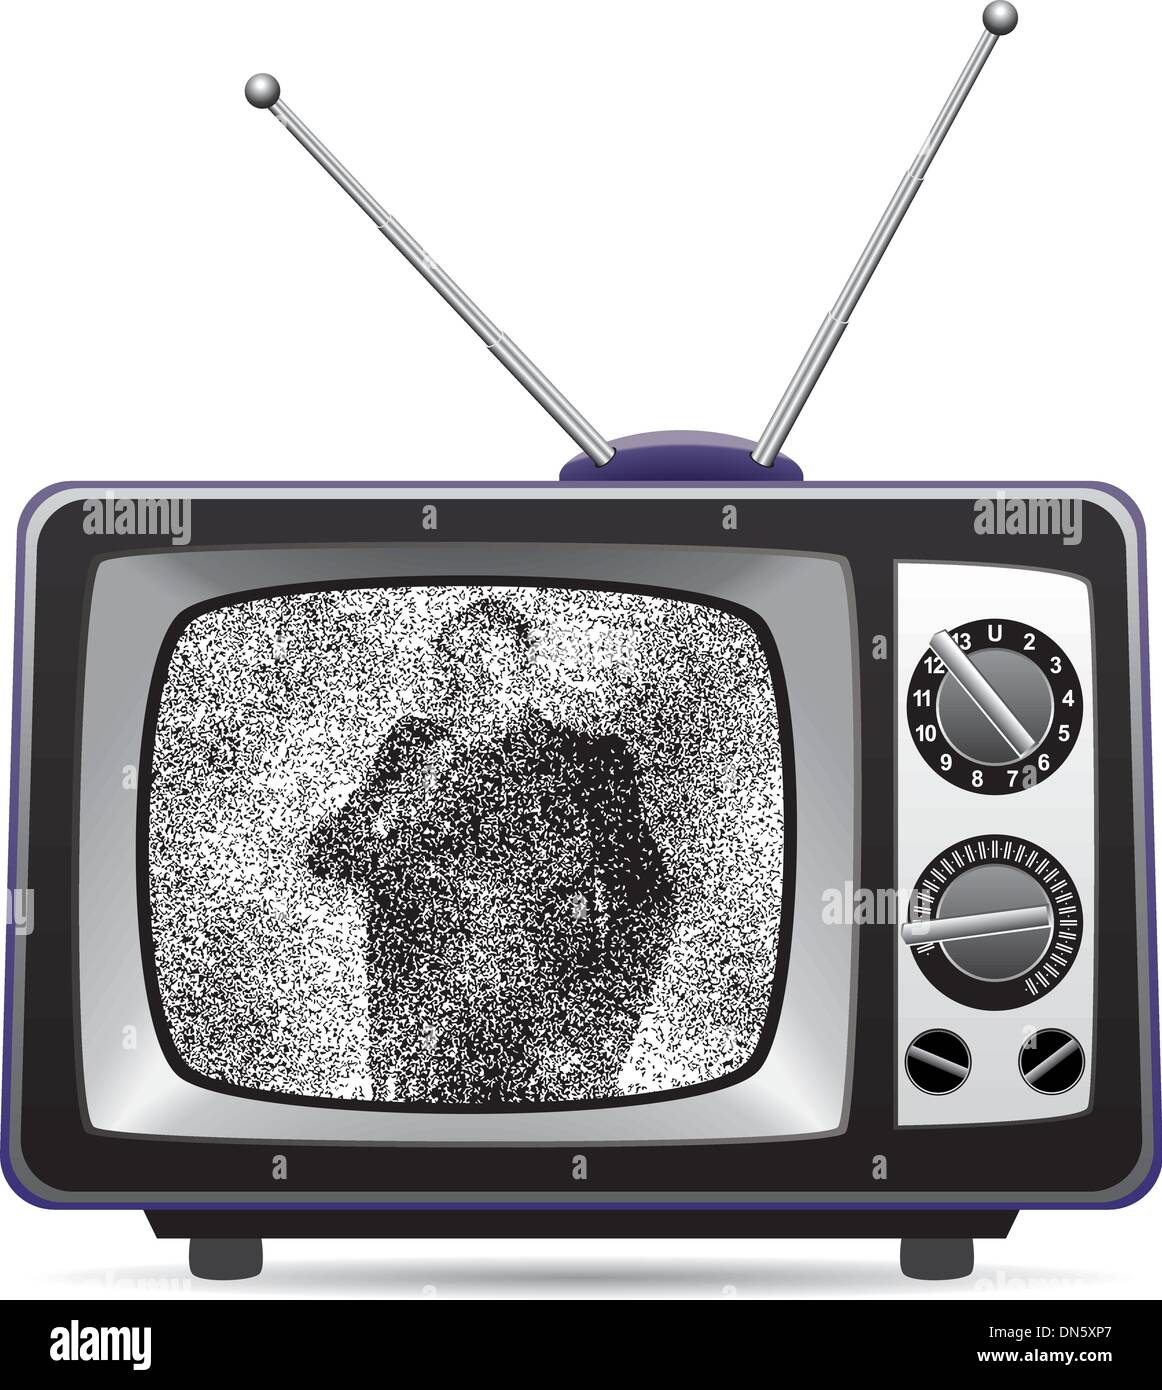 Televisor retro con estática en una pantalla Ilustración del Vector